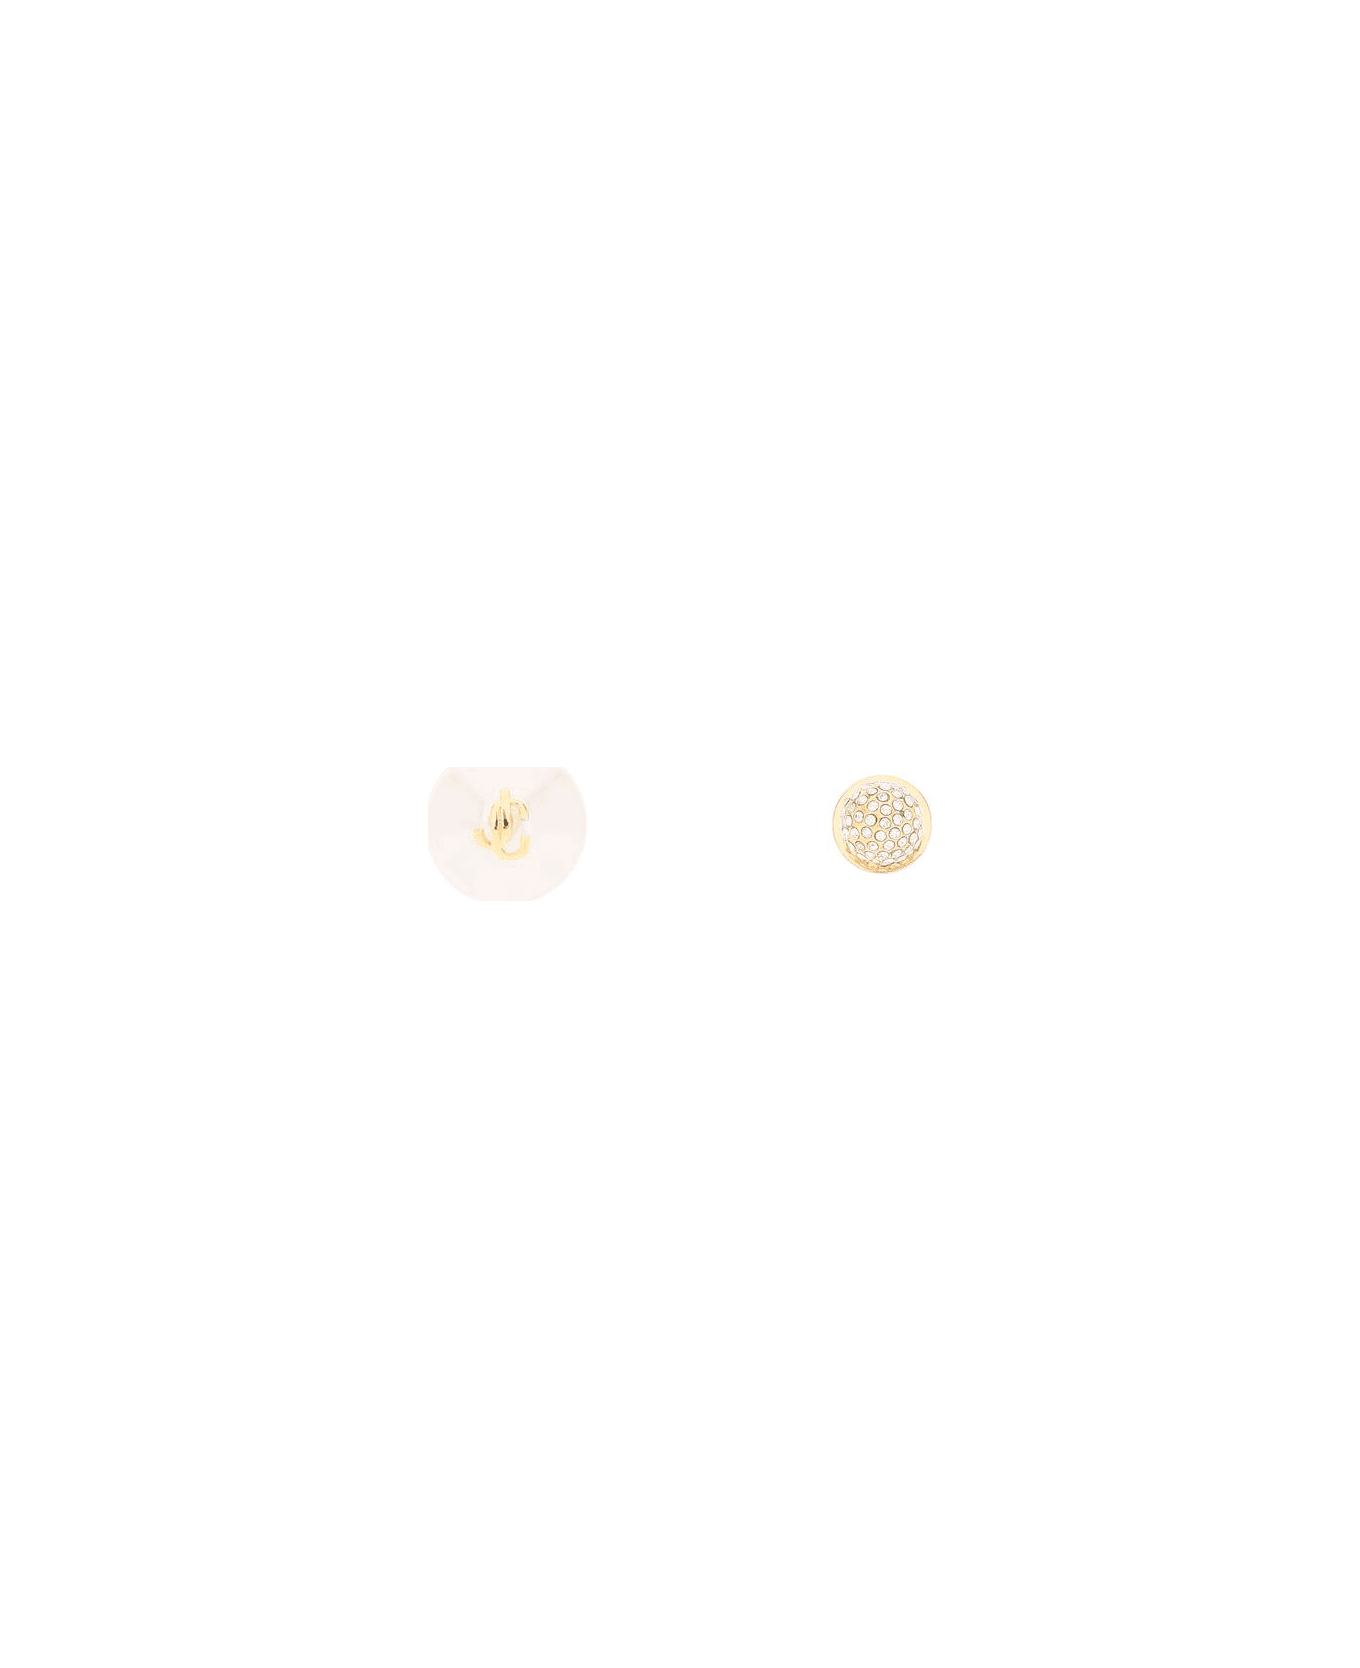 Jimmy Choo Auri Studs Earrings - GOLD WHITE CRYSTAL (White)